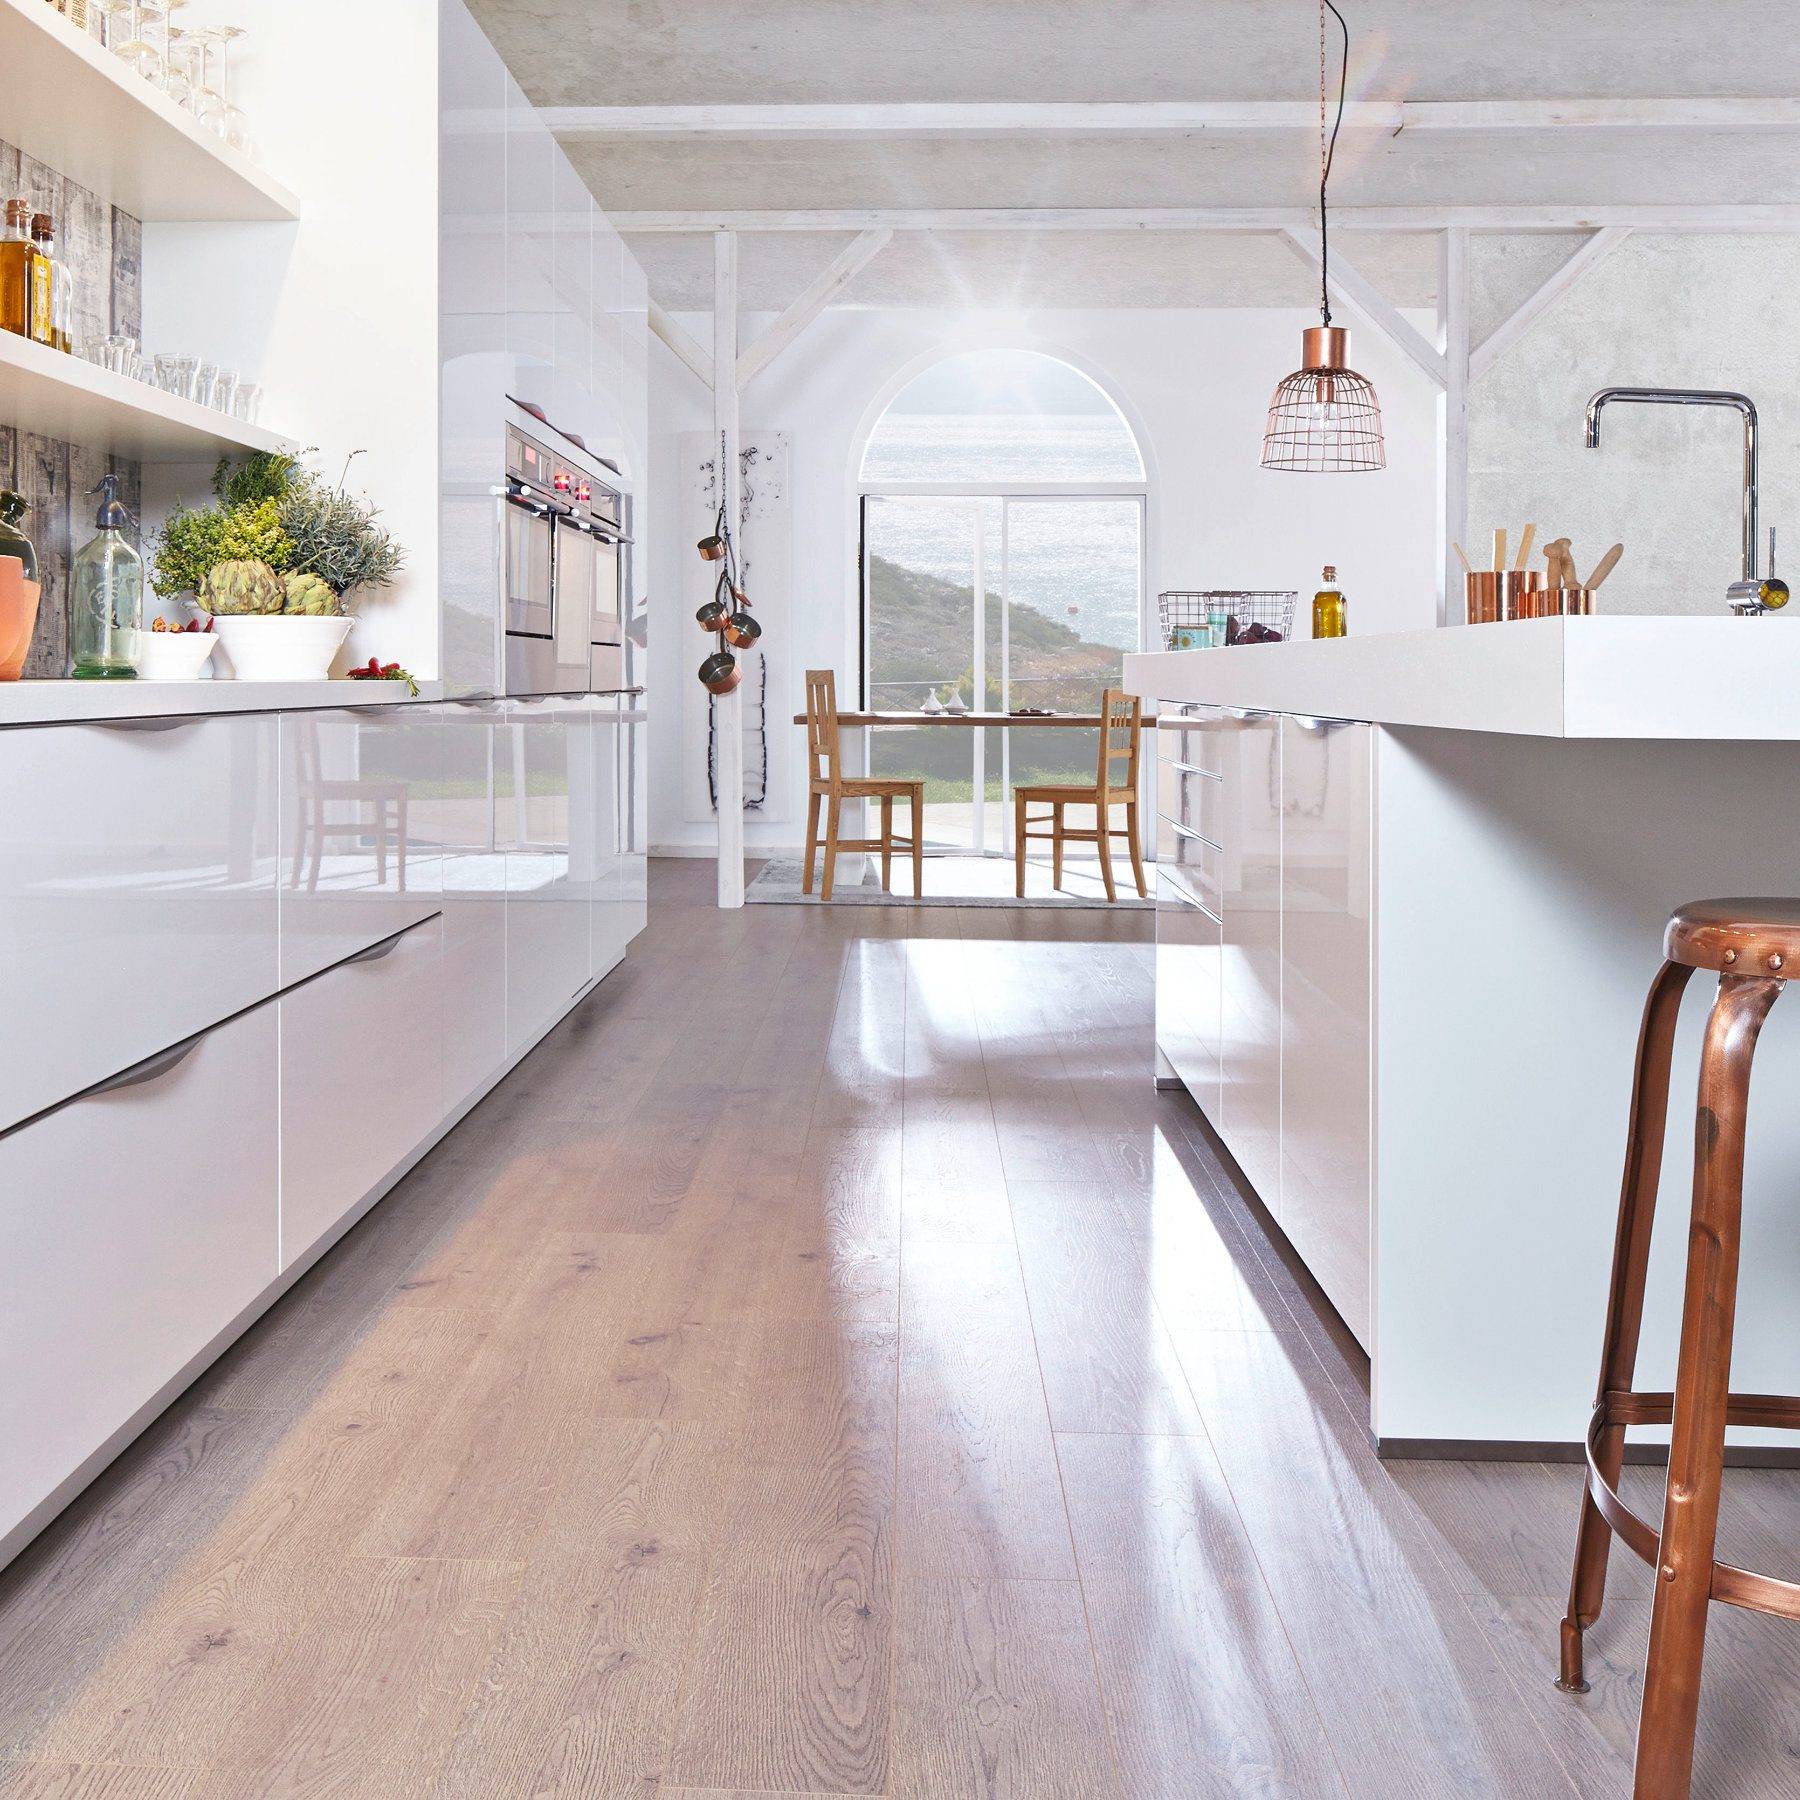 Bauformat White High Gloss Kitchen | Zara Kitchen Design, Wokingham